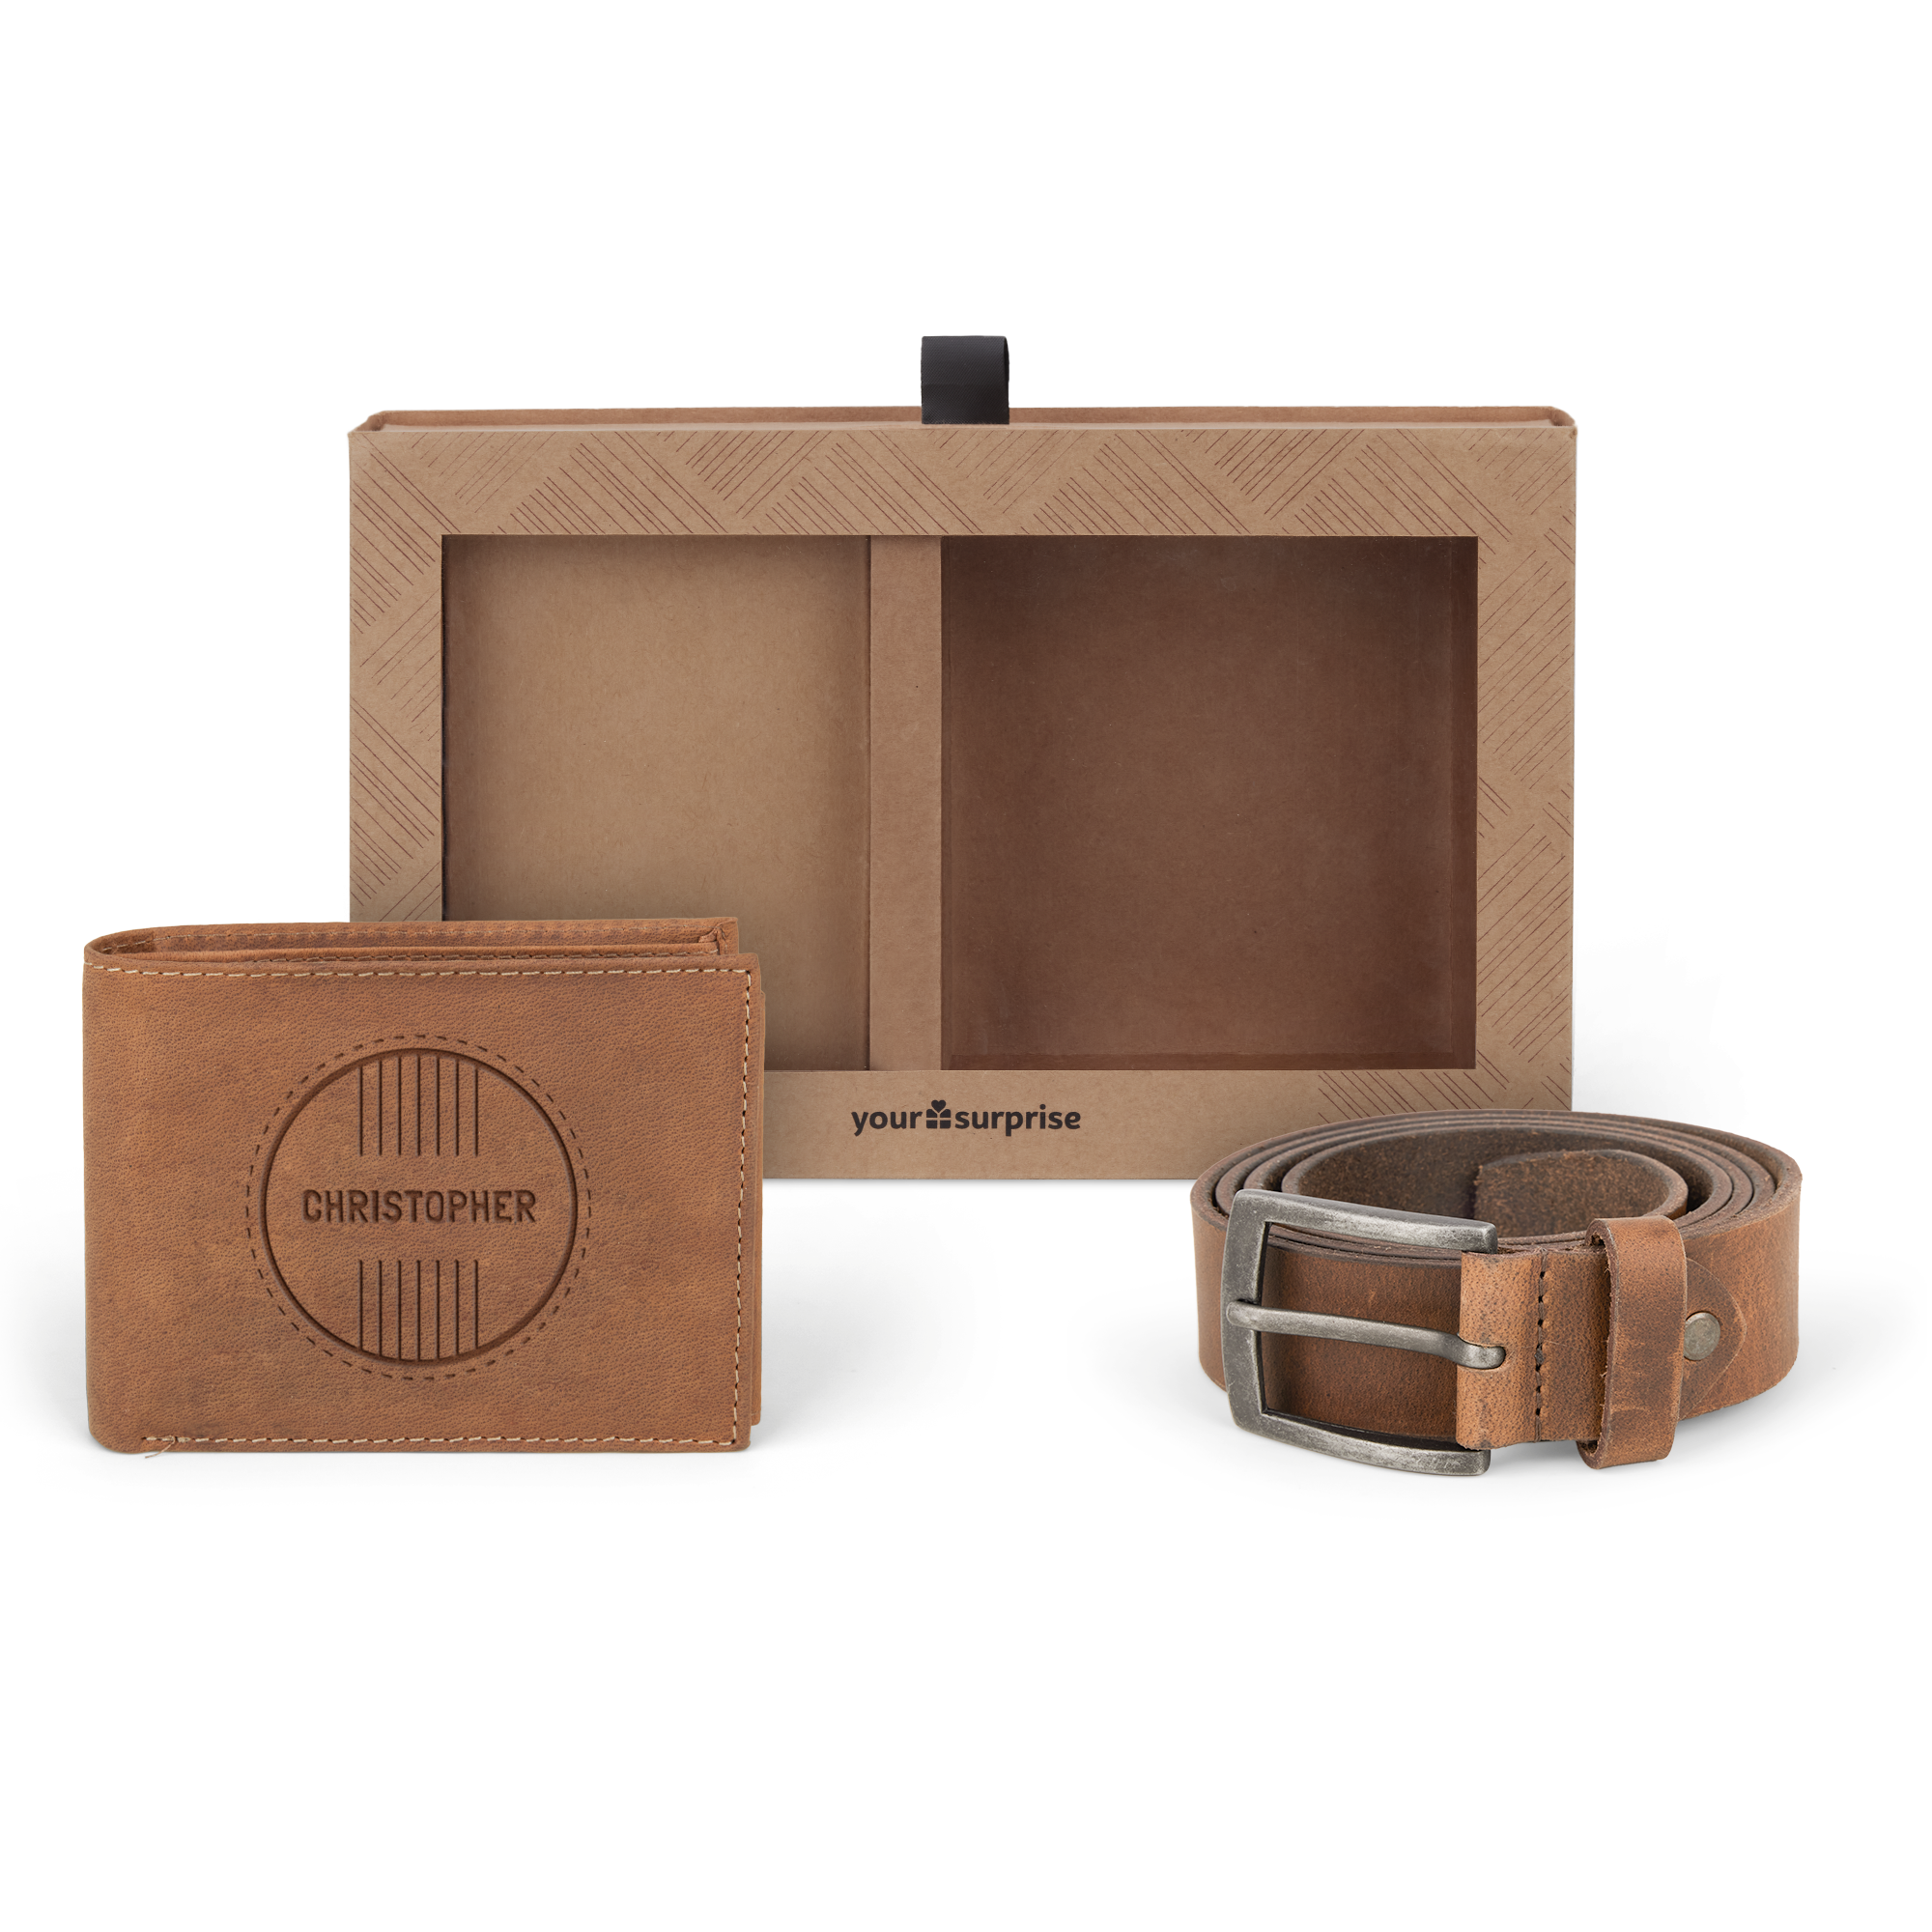 Leather wallet & belt gift set